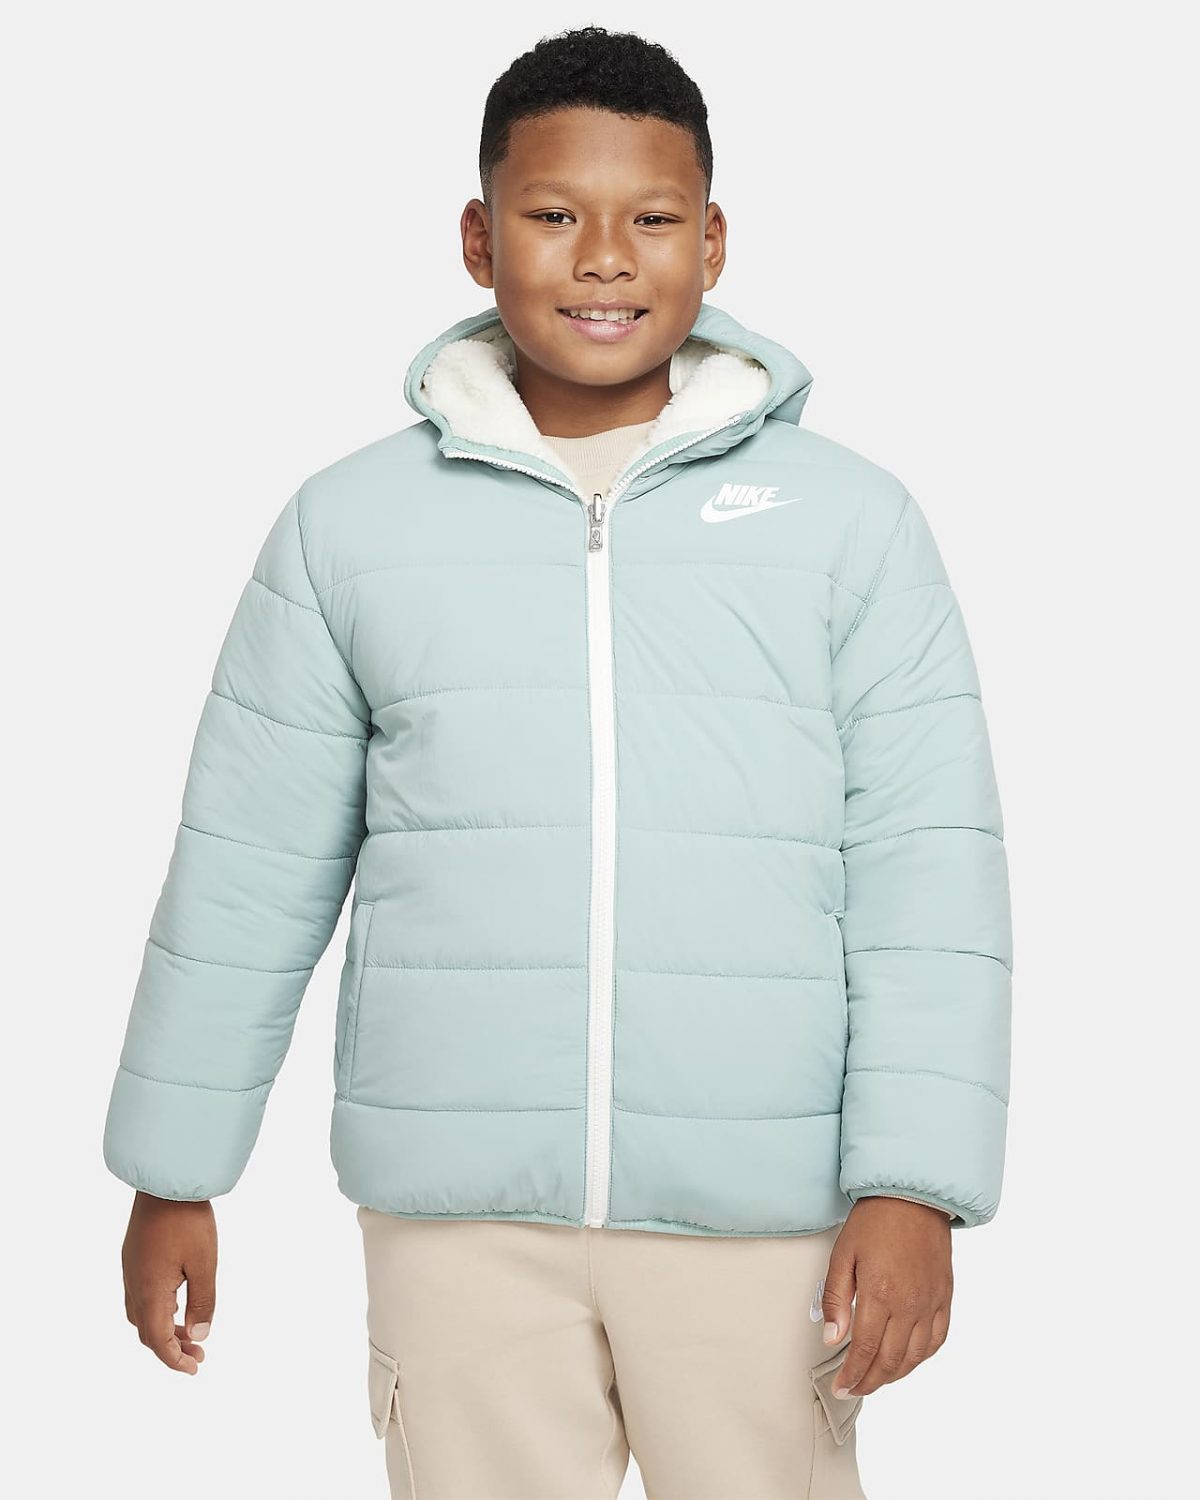 Детская куртка Nike фото